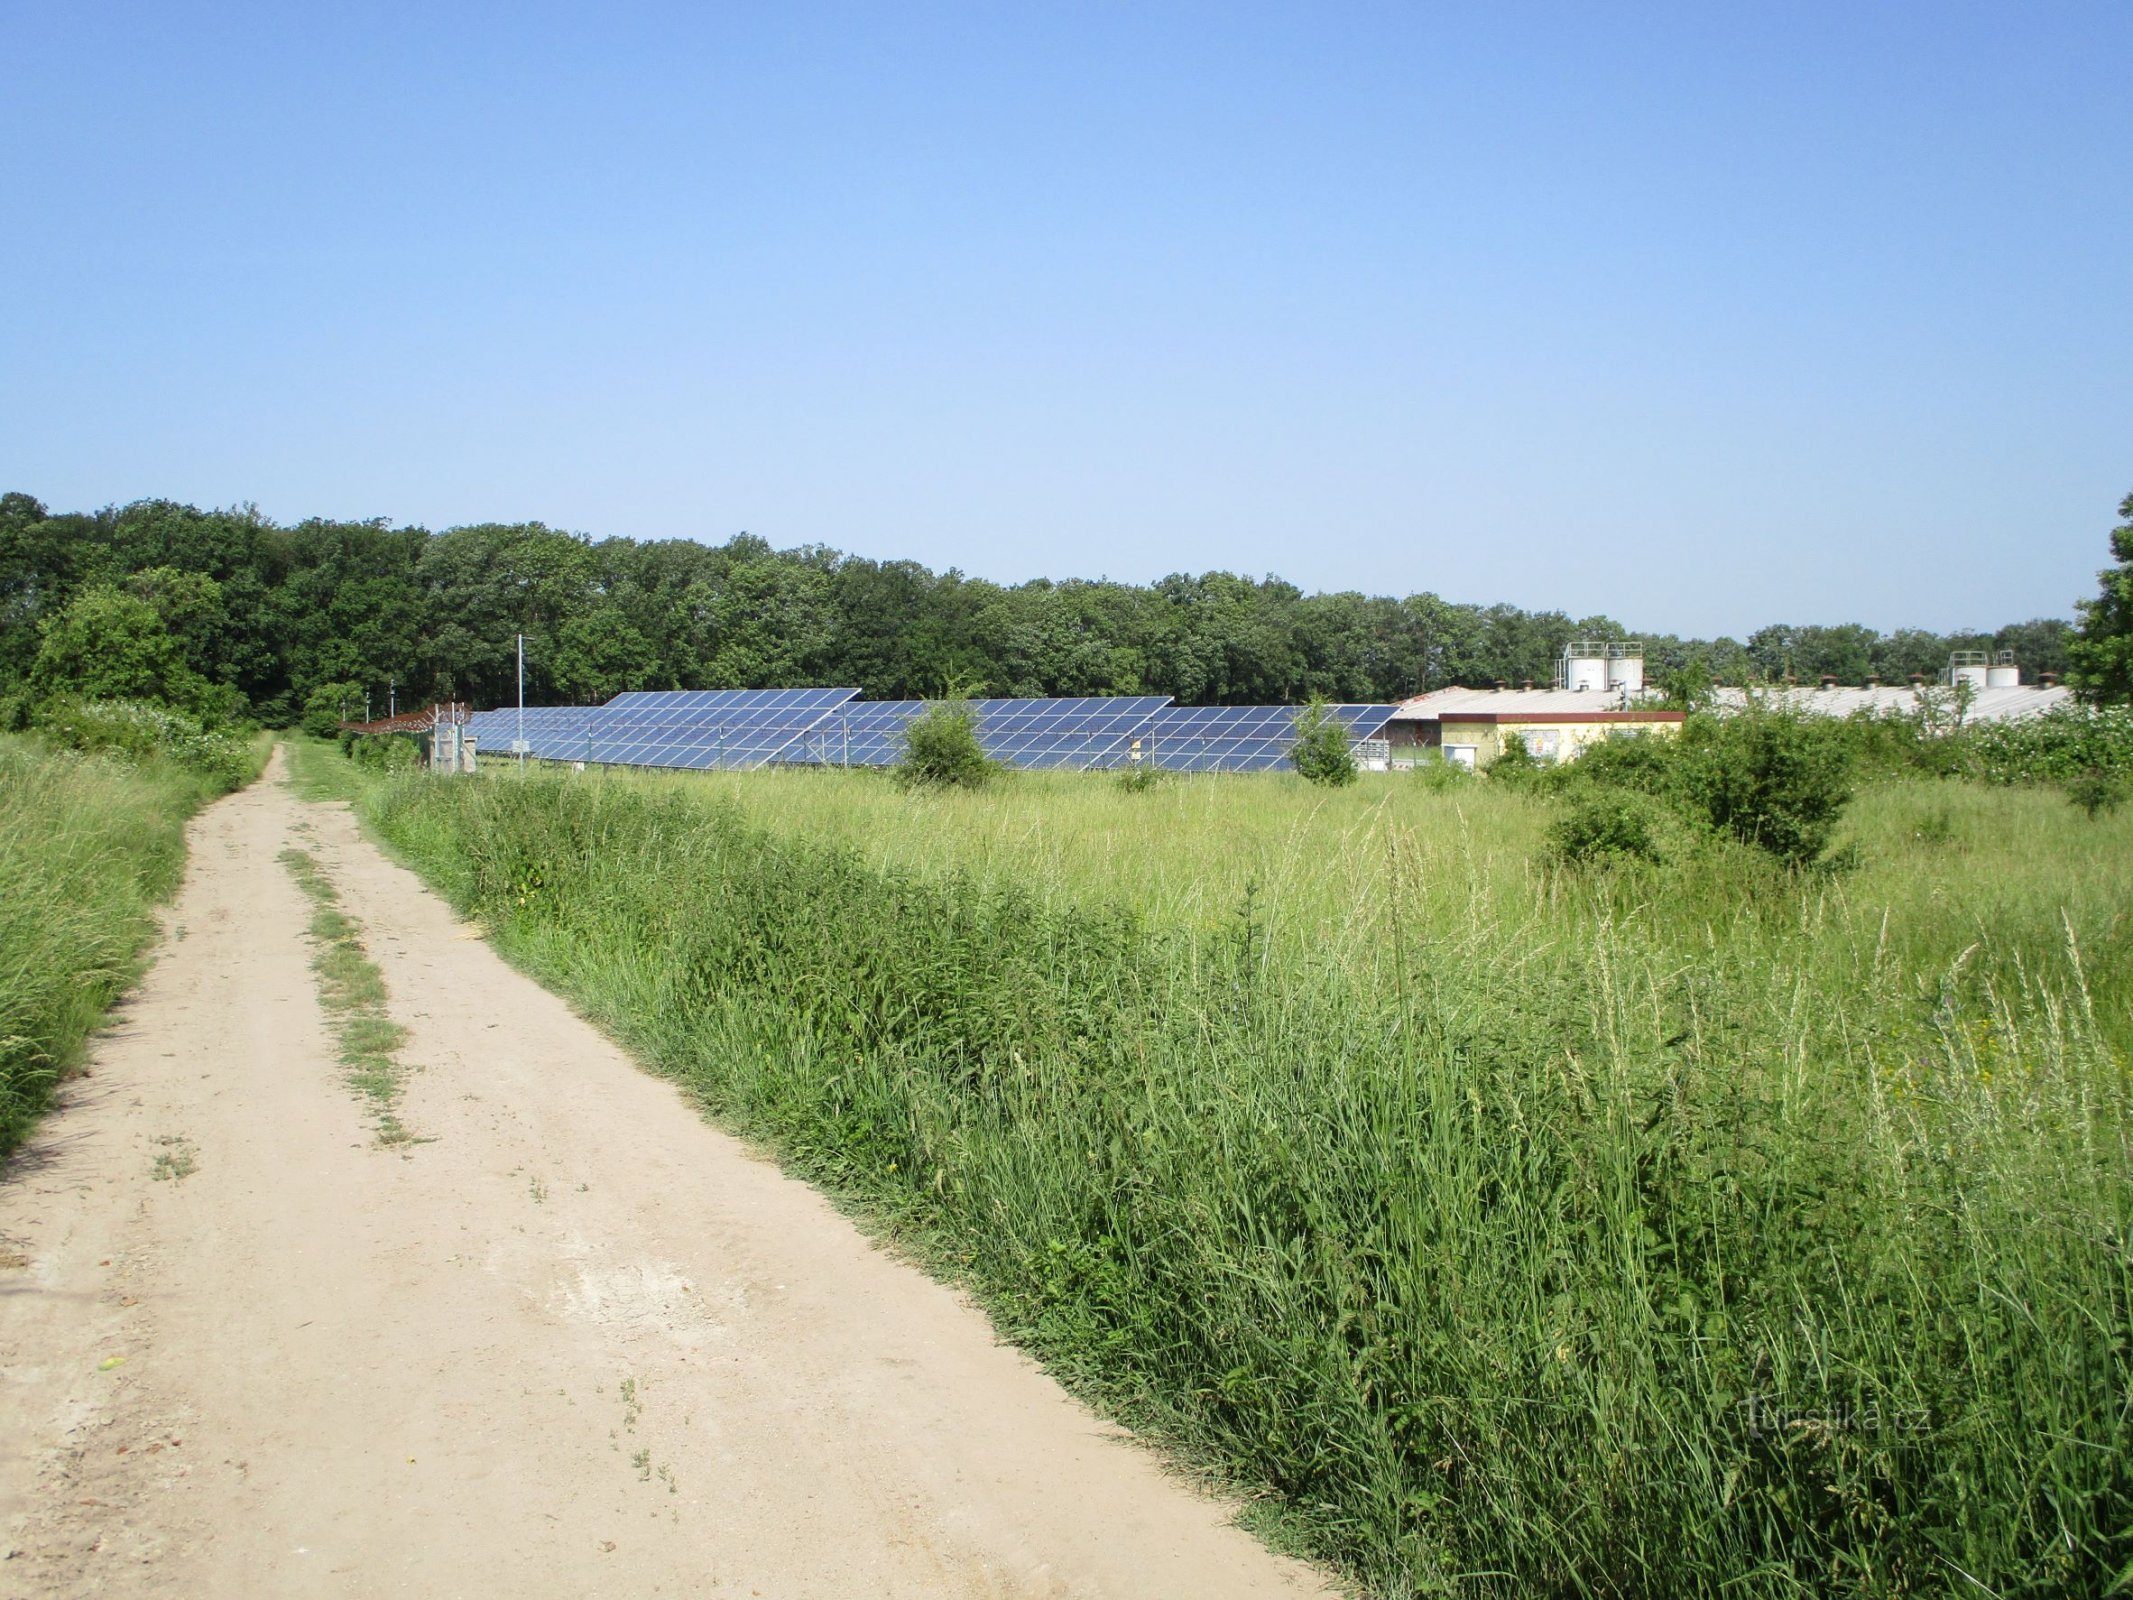 El camino a Michnovka y la zona agrícola vecina (Dobřenice, 12.6.2019/XNUMX/XNUMX)